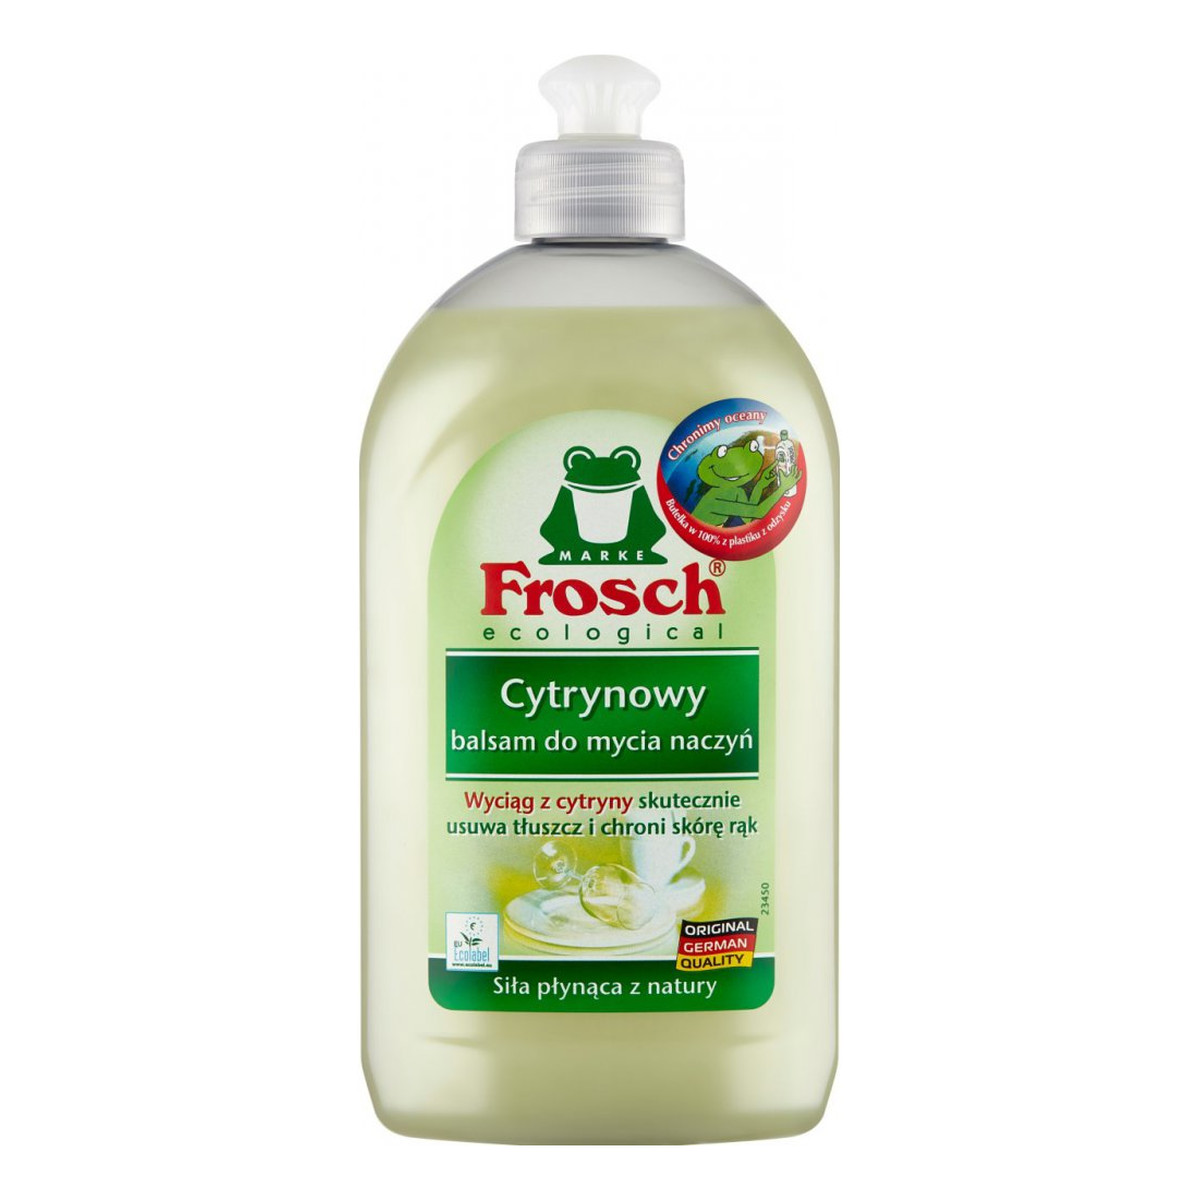 Frosch Ecological Cytrynowy balsam do mycia naczyń 500ml